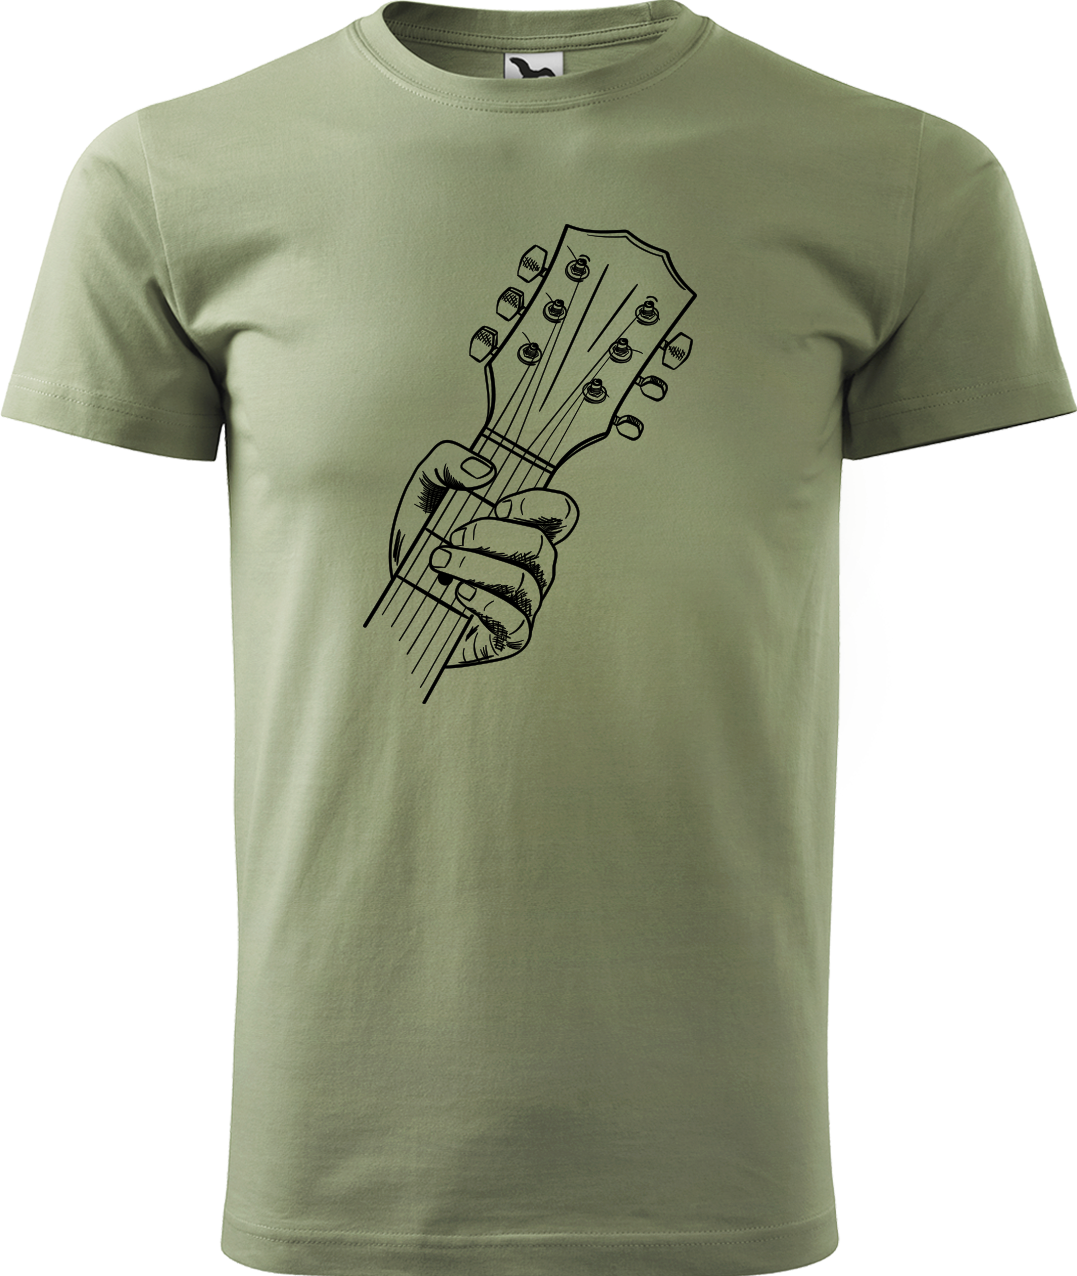 Pánské tričko s kytarou - Hlava kytary Velikost: XL, Barva: Světlá khaki (28)